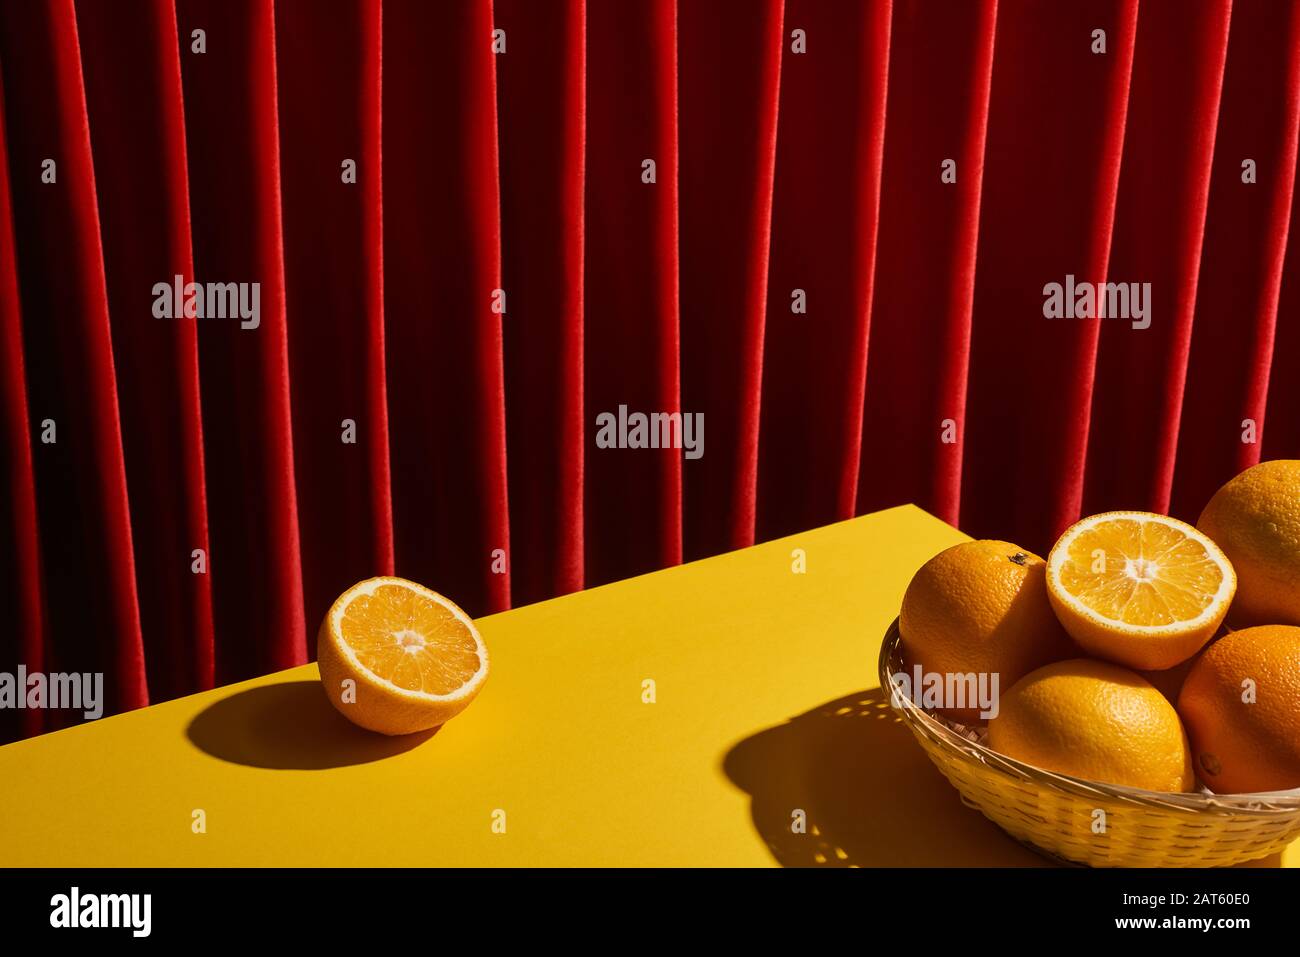 classica ancora vita con arance in cesto di vimini sul tavolo giallo vicino tenda rossa Foto Stock